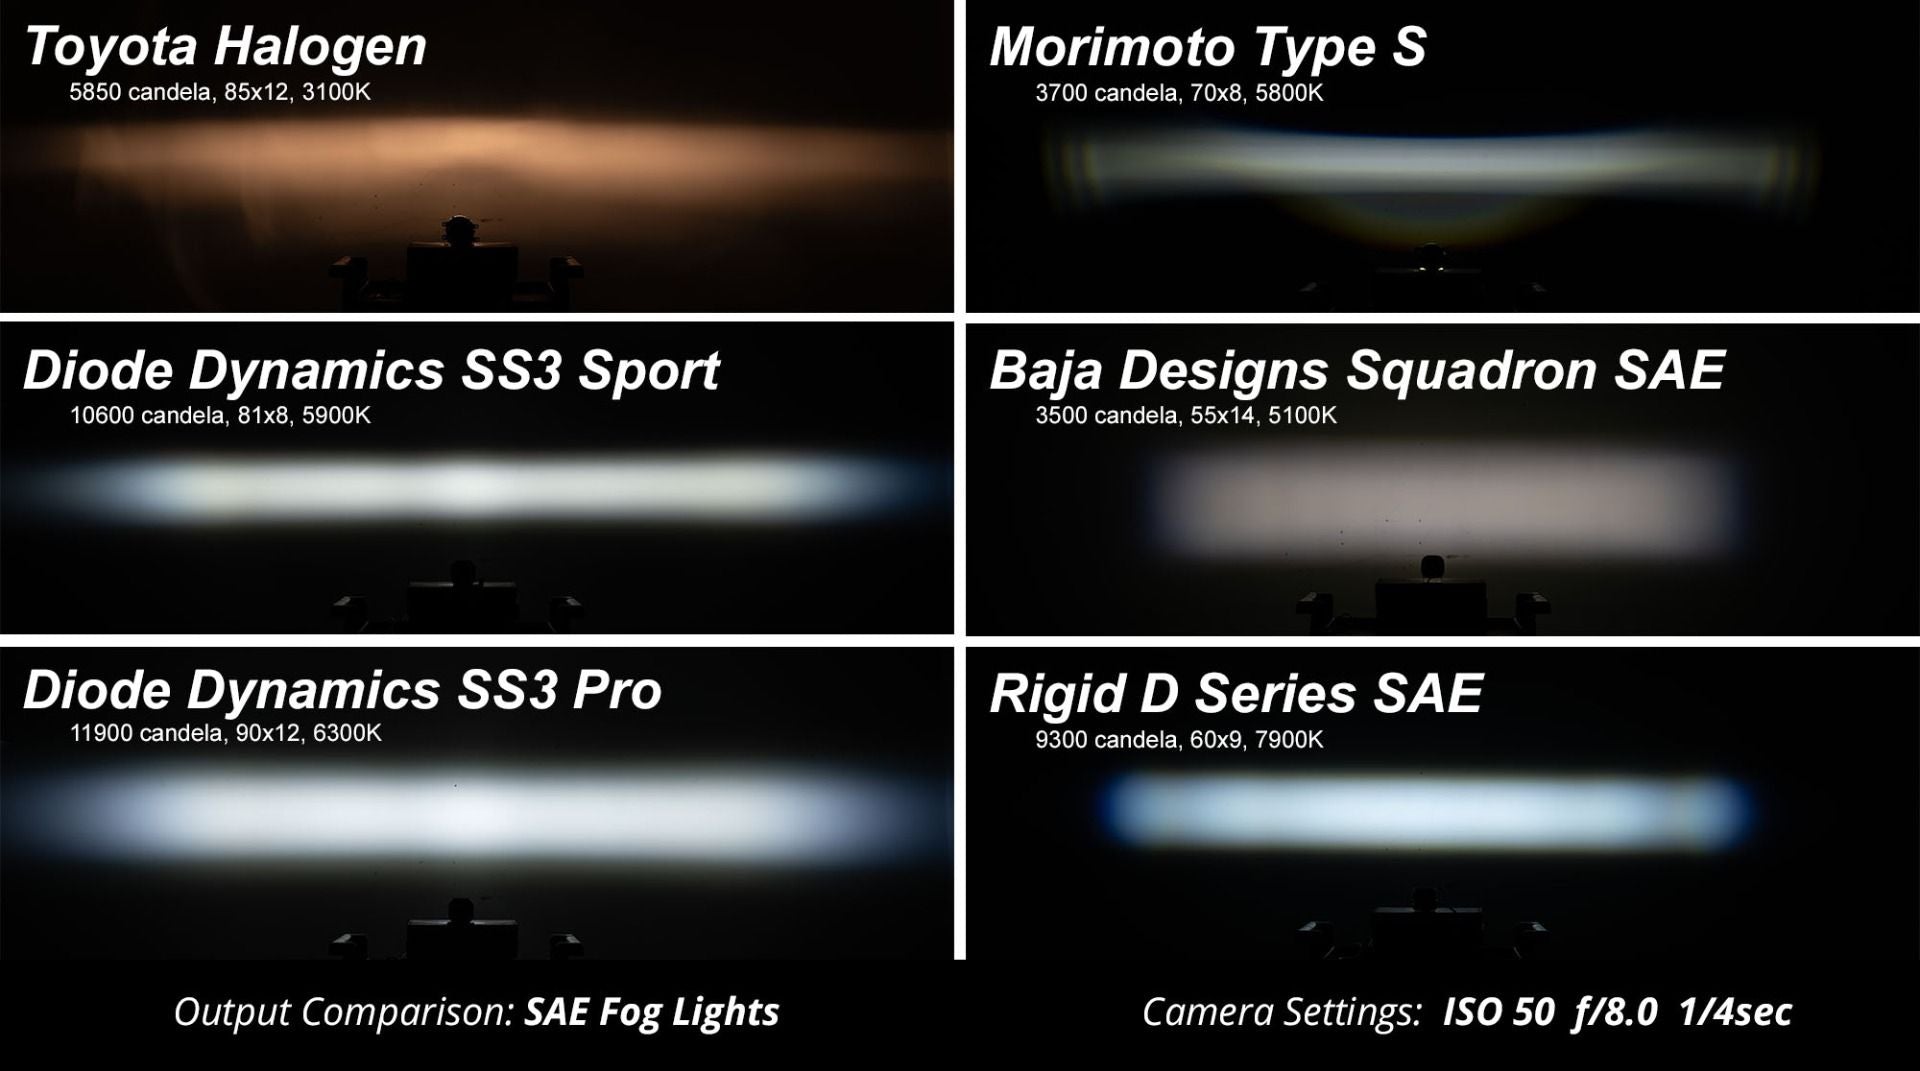 SS3 LED Fog Light Kit For 2017-2019 Nissan Titan